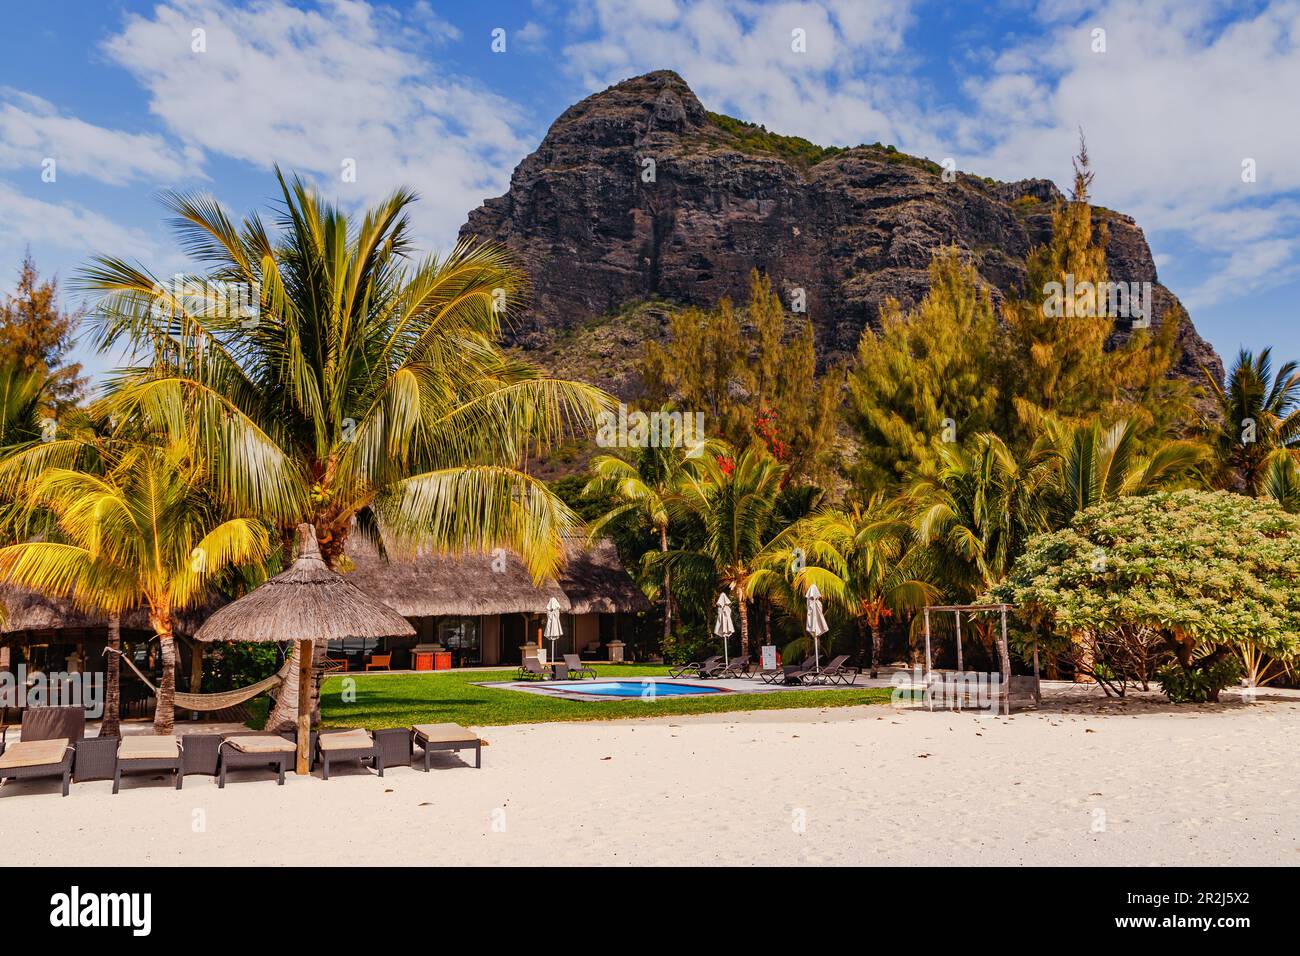 Un complexe hôtelier pittoresque sur la plage du Morne, au sud de l'île Maurice, dans l'océan Indien Banque D'Images